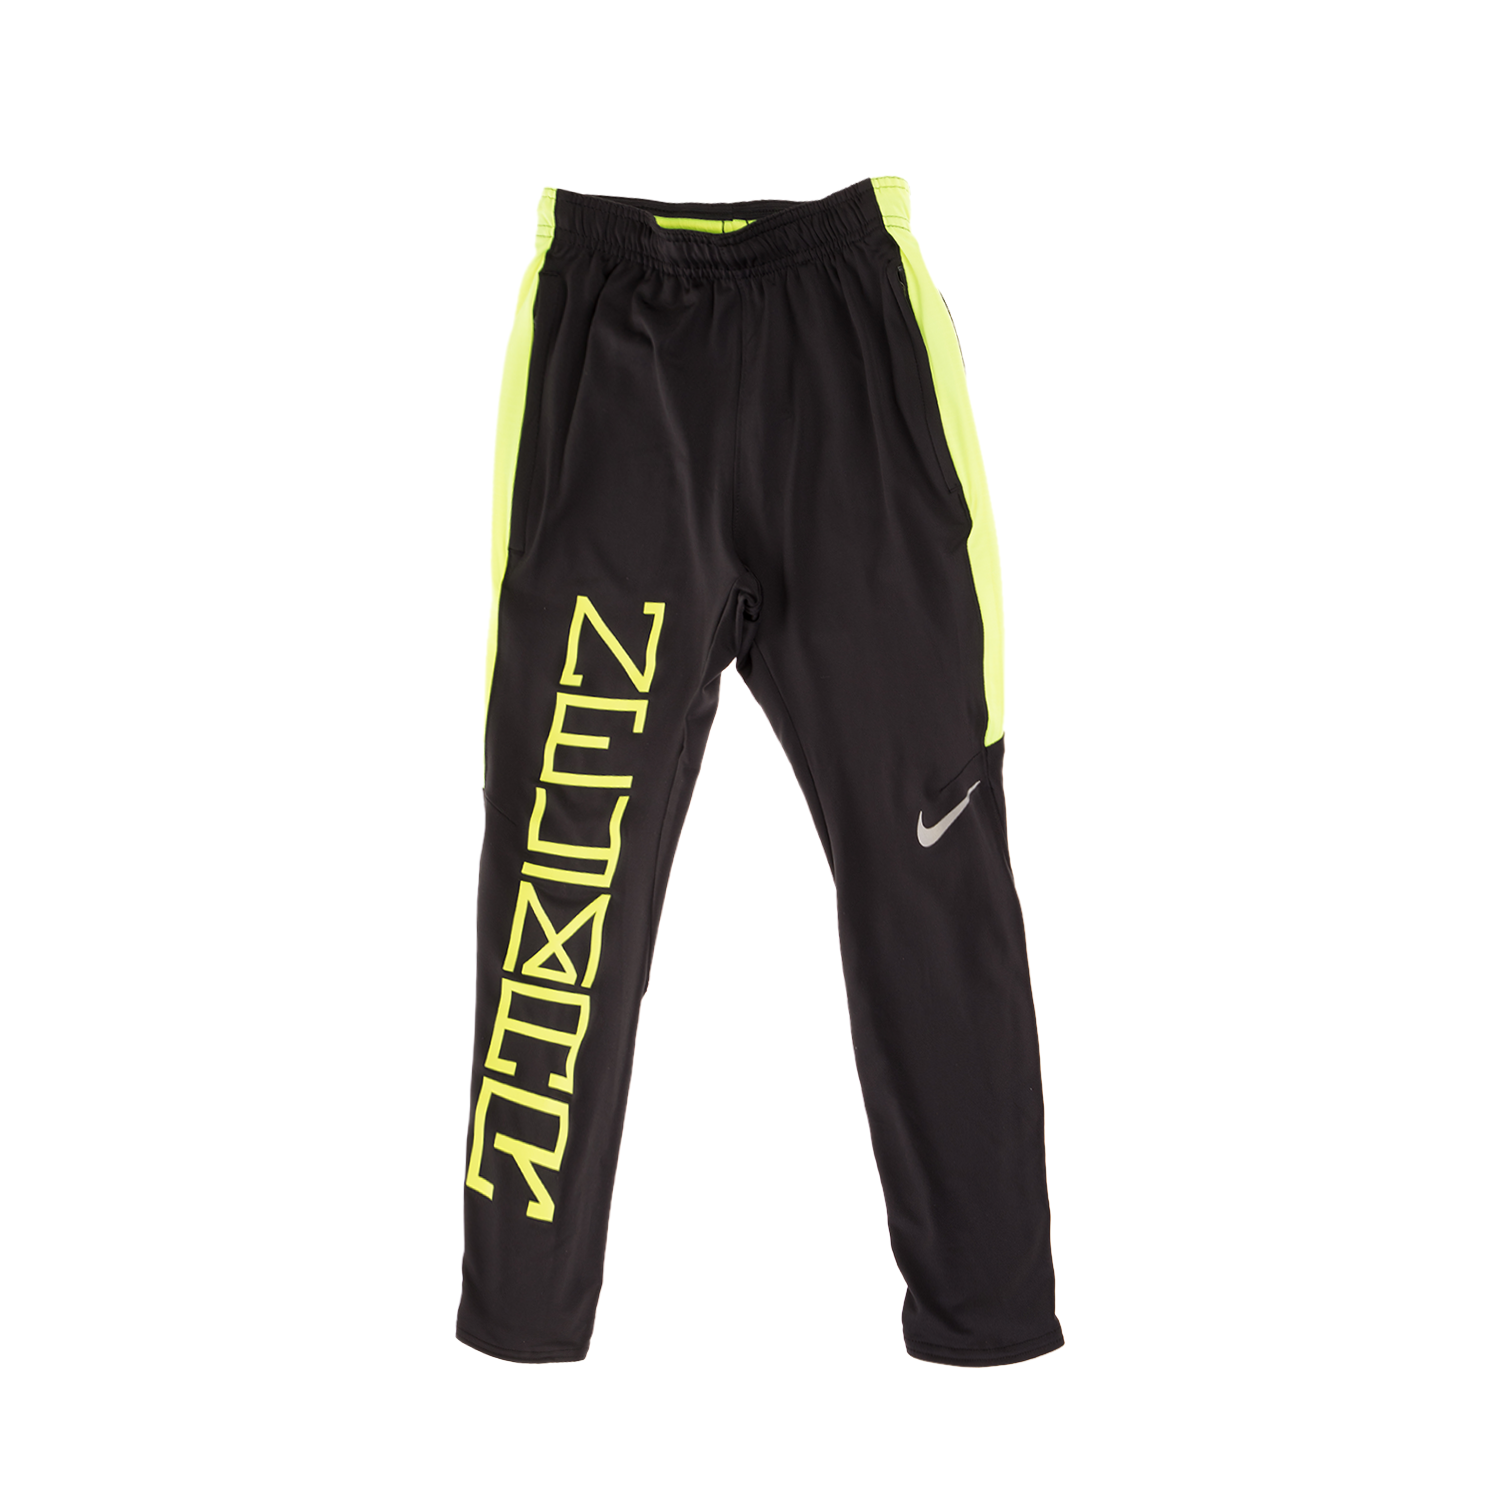 Παιδικά/Boys/Ρούχα/Αθλητικά NIKE - Παιδικό παντελόνι για αγόρια NIKE NYR SQD μαύρο κίτρινο